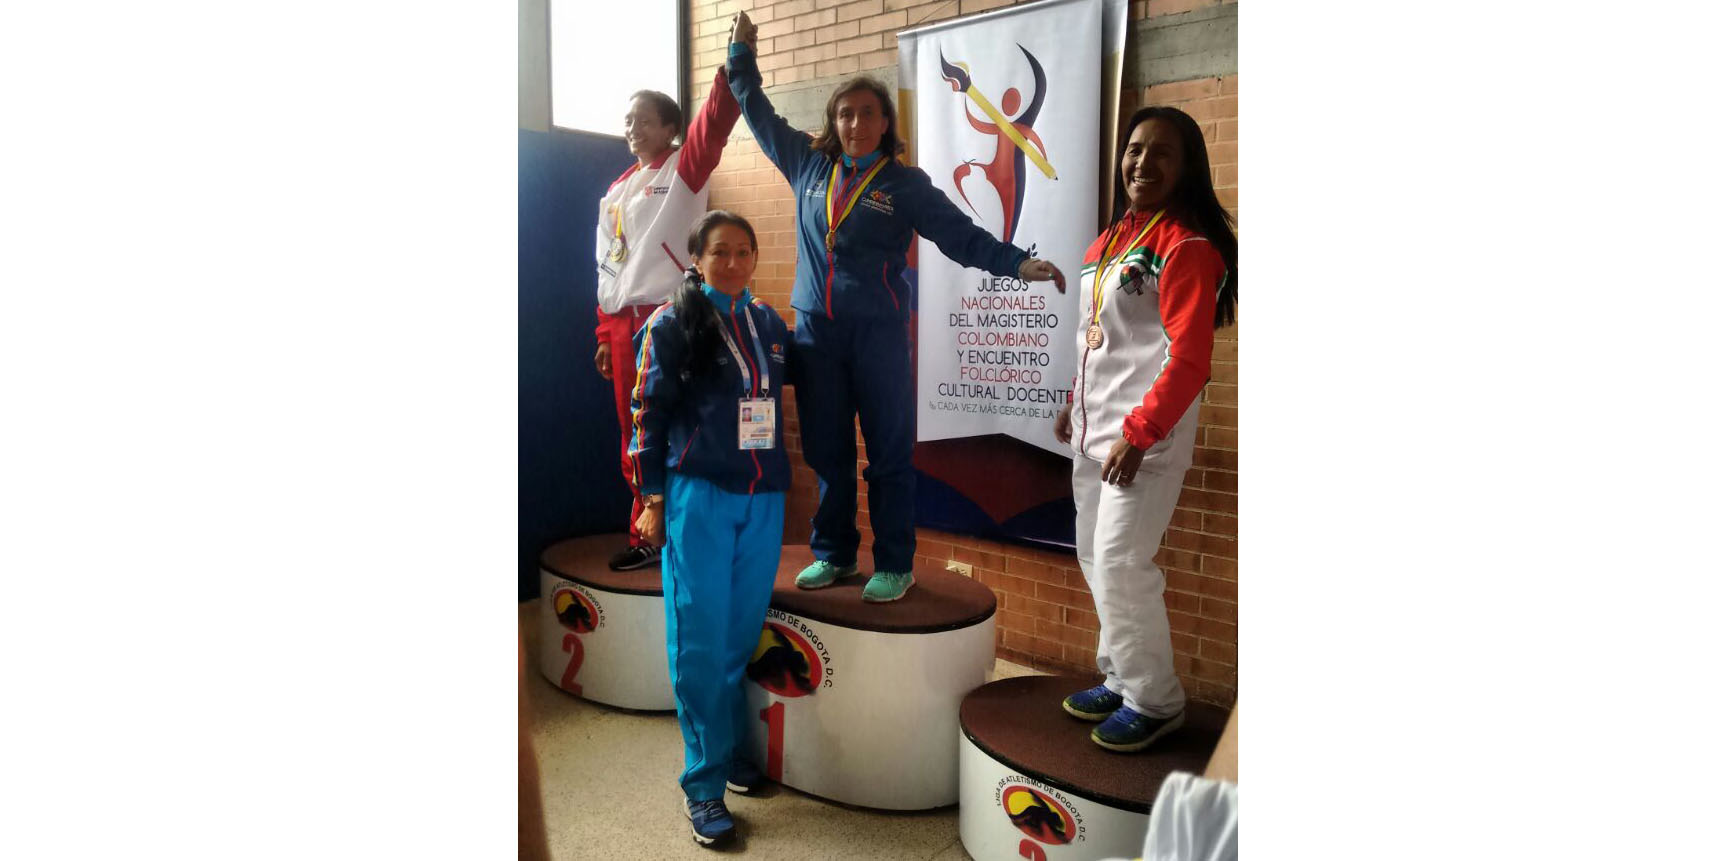 Veintiuna medallas ha obtenido Cundinamarca en los Juegos Deportivos Nacionales del Magisterio 2016